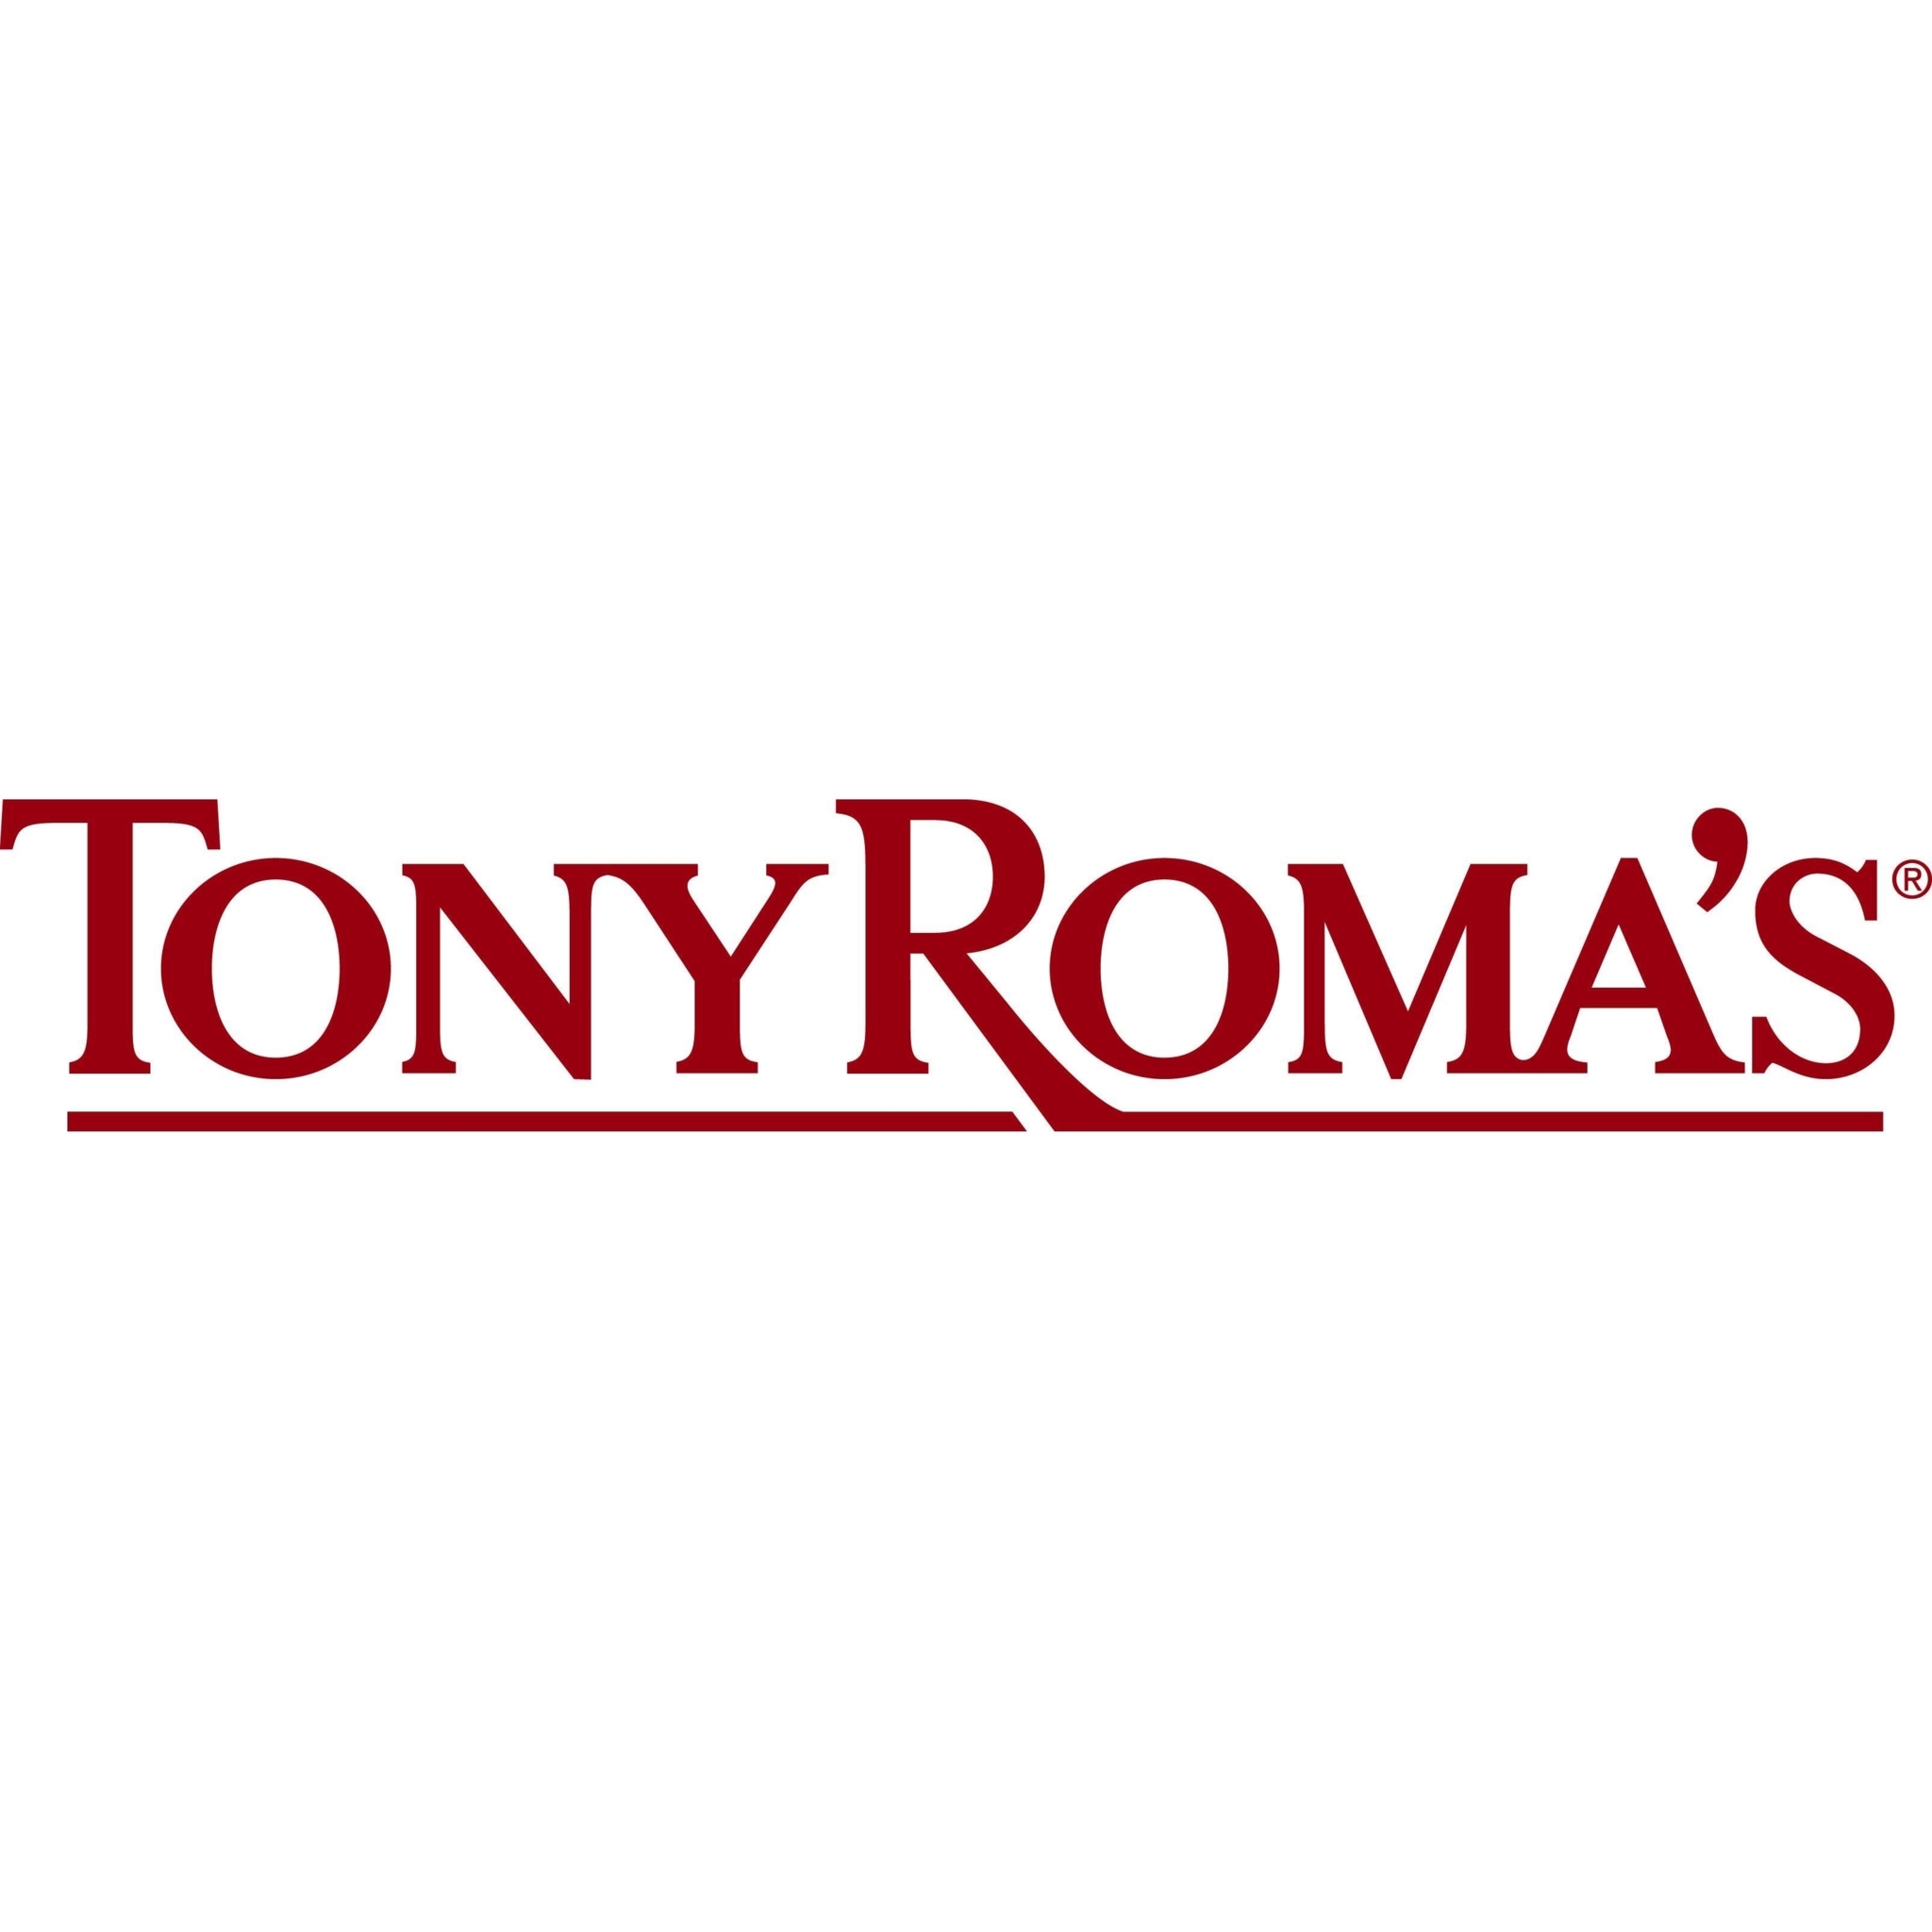 Tony Roma's - Pubs